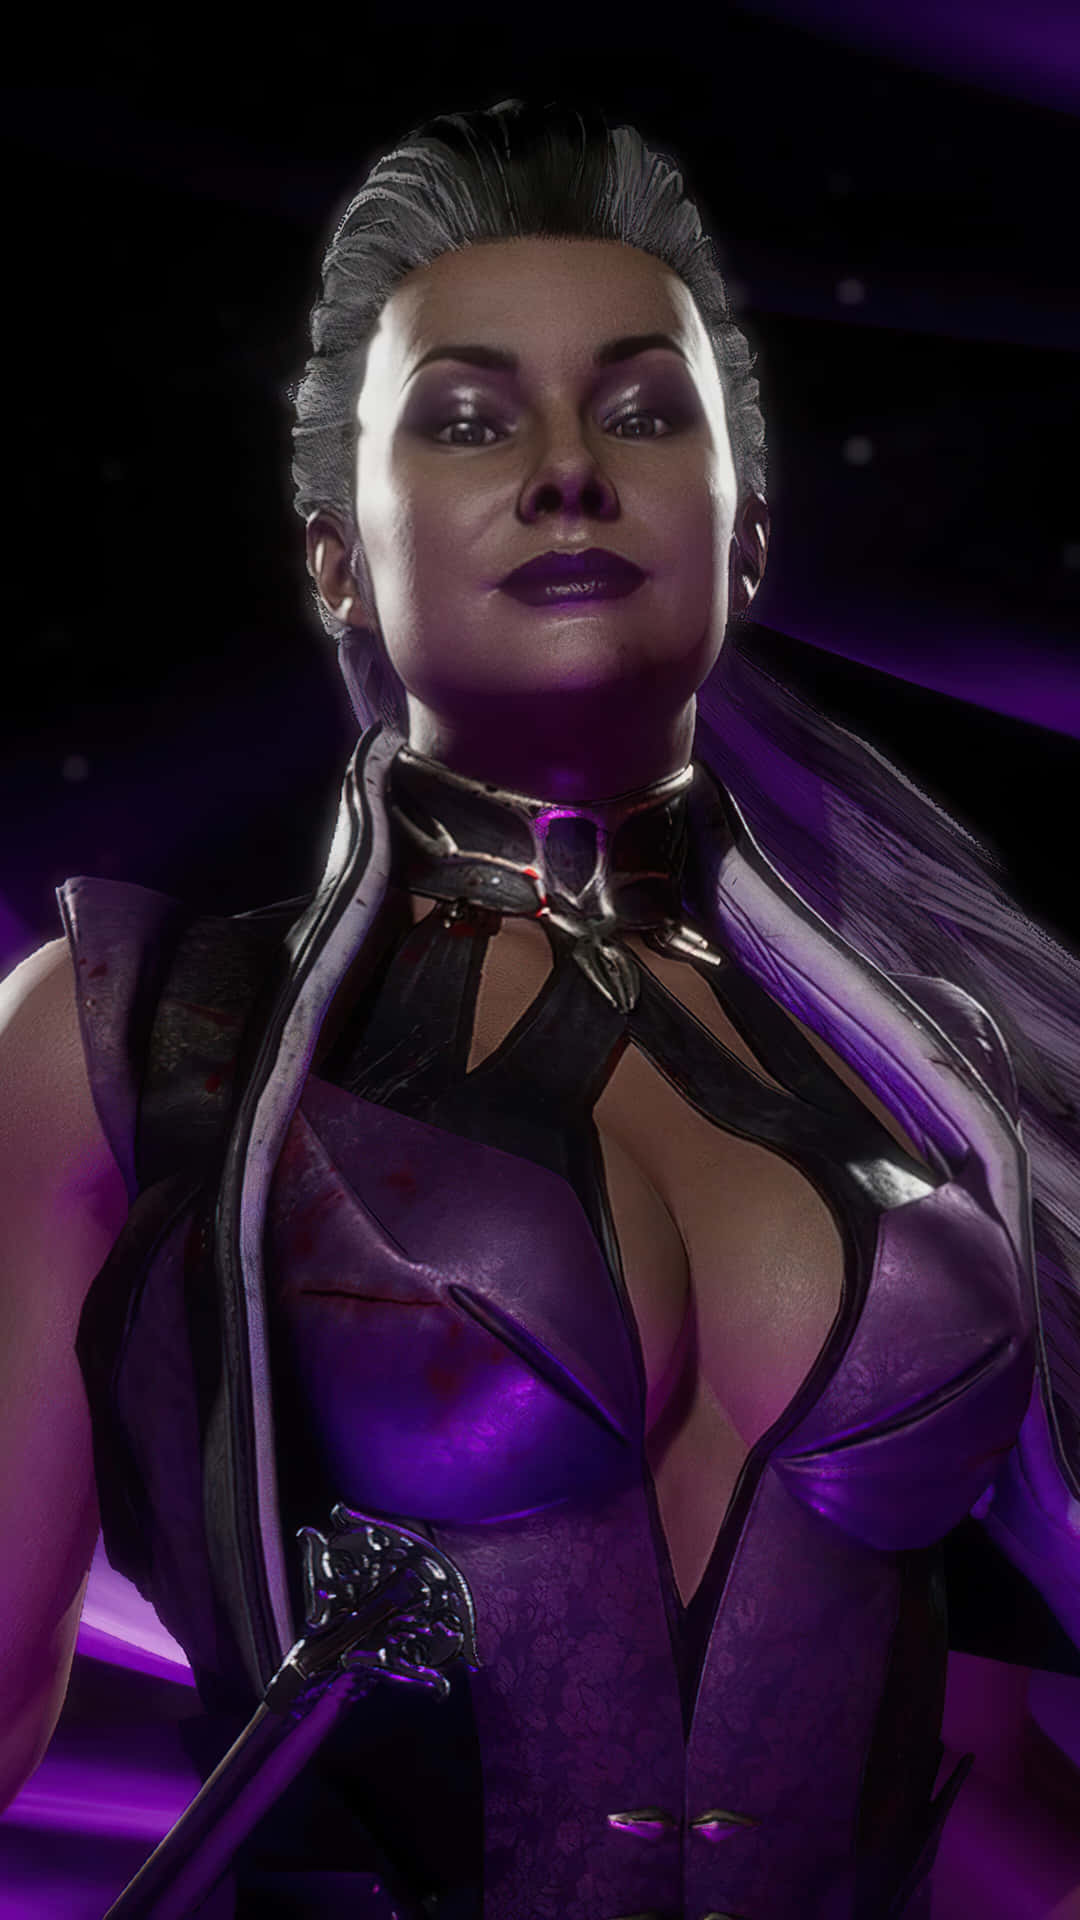 Empowering Sindel, Queen of Outworld, in Mortal Kombat Wallpaper